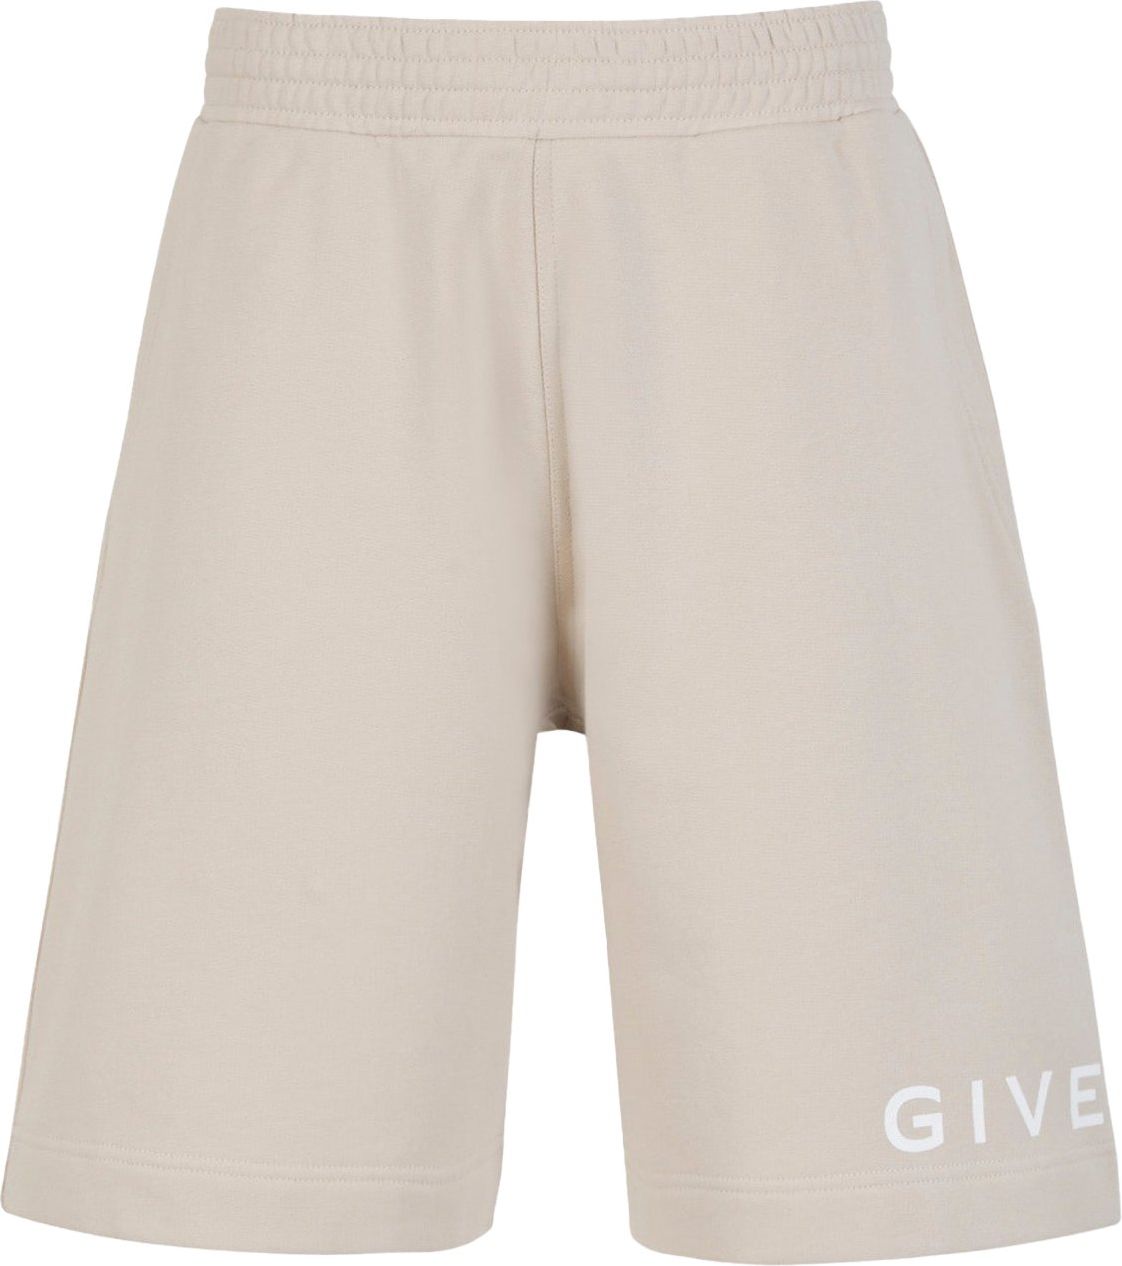 Givenchy Cotton Logo Bermuda Shorts Grijs